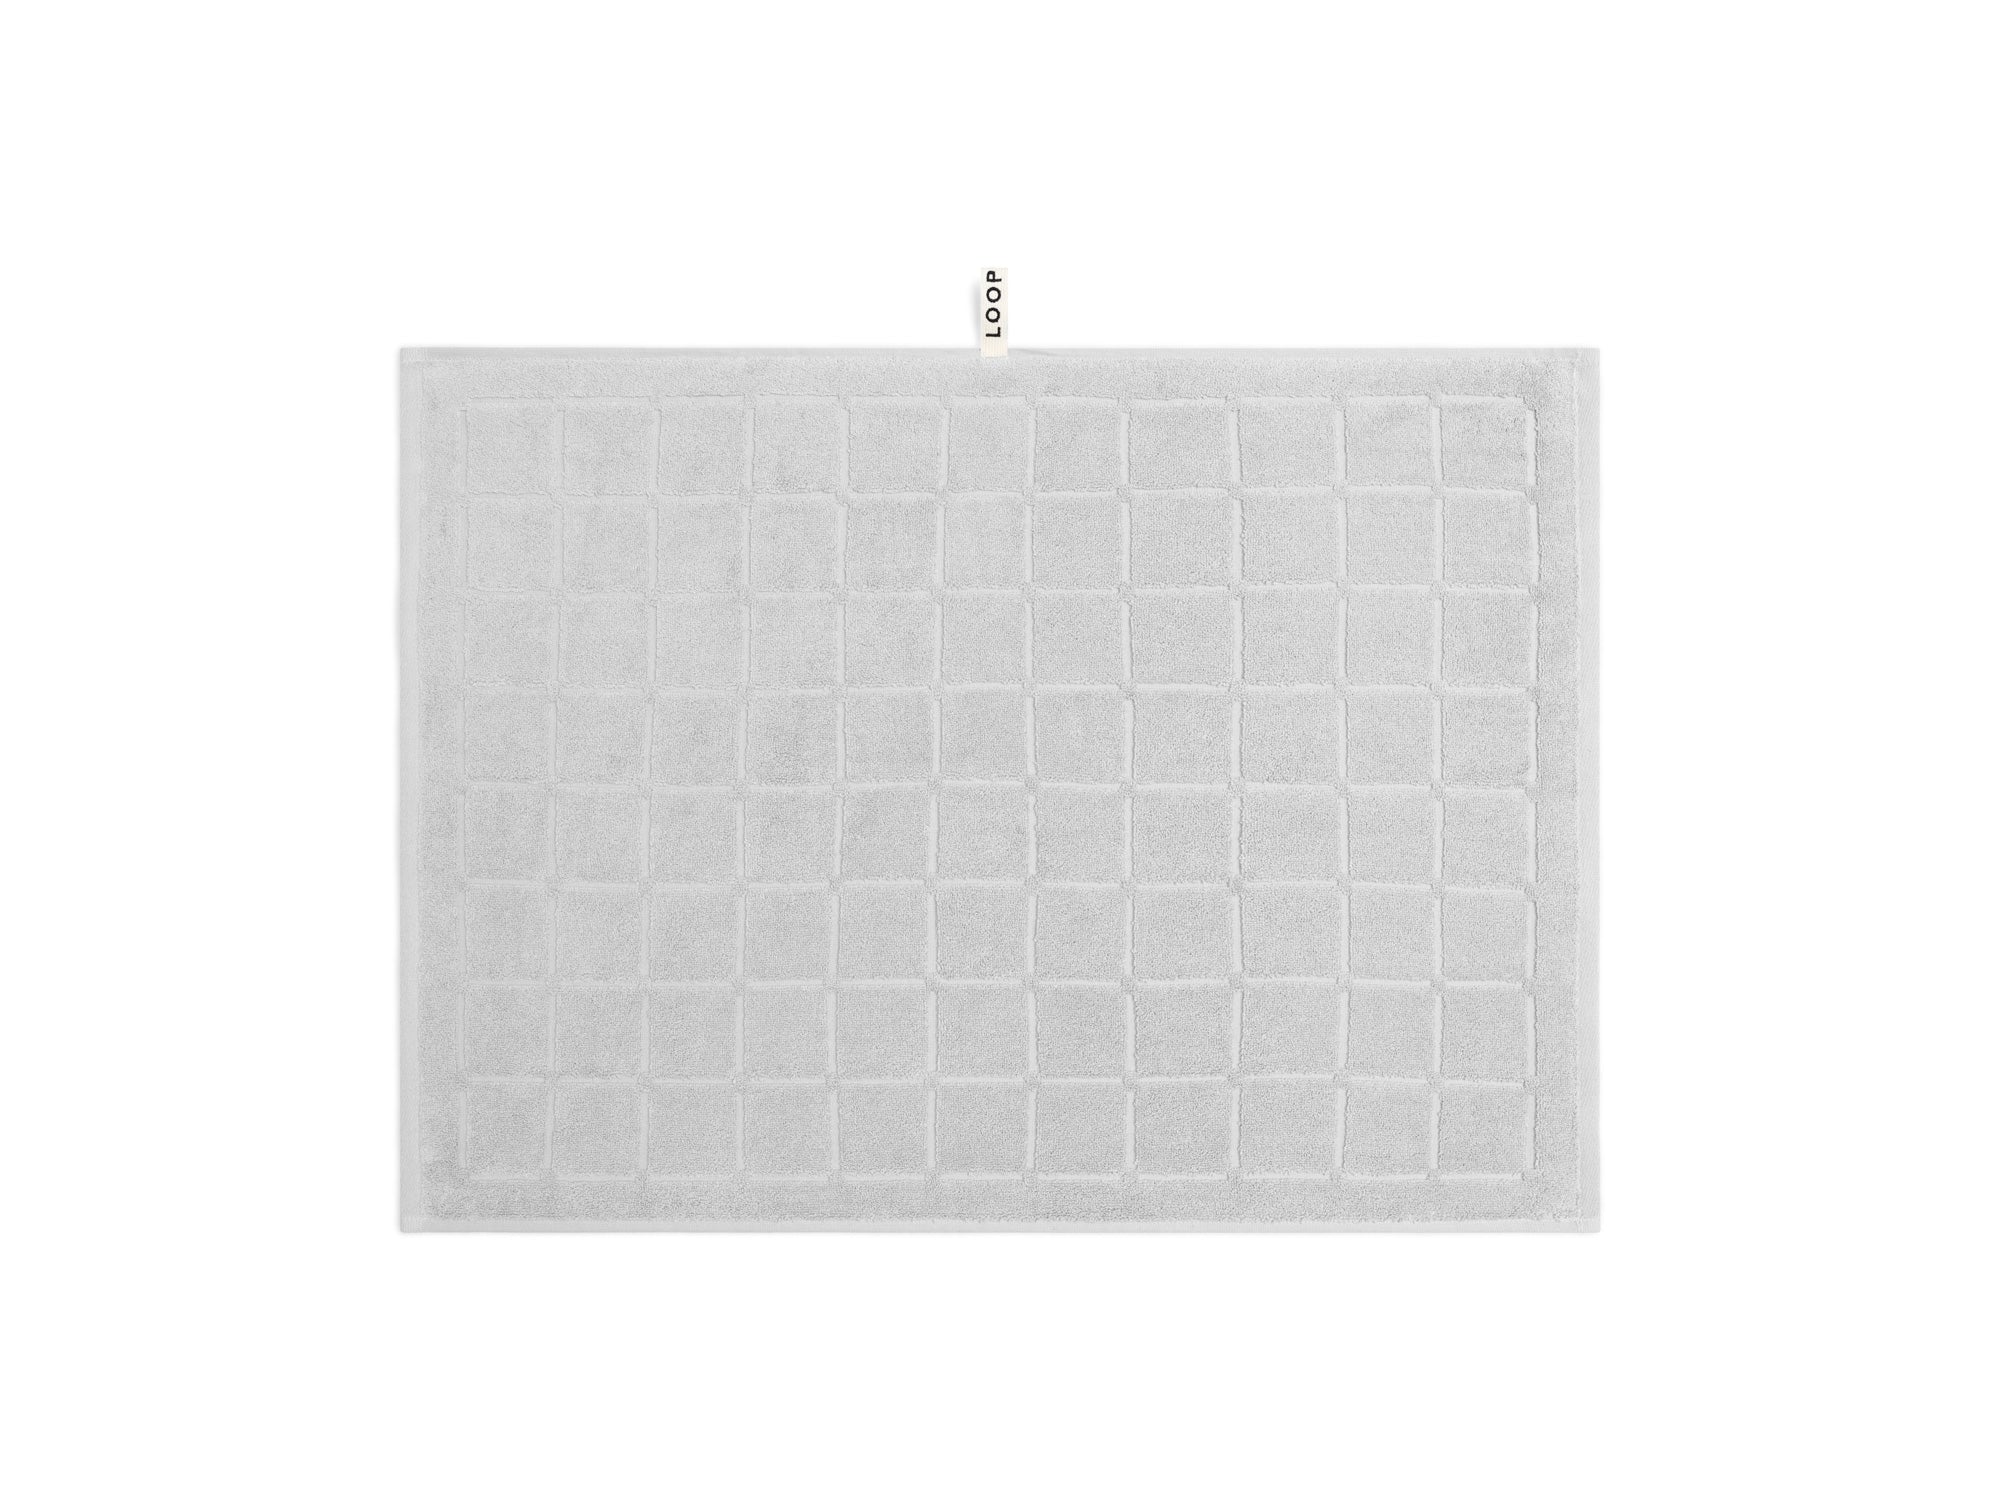 Bath Sheet Bundle - Butter/Stone - Dual Stripe